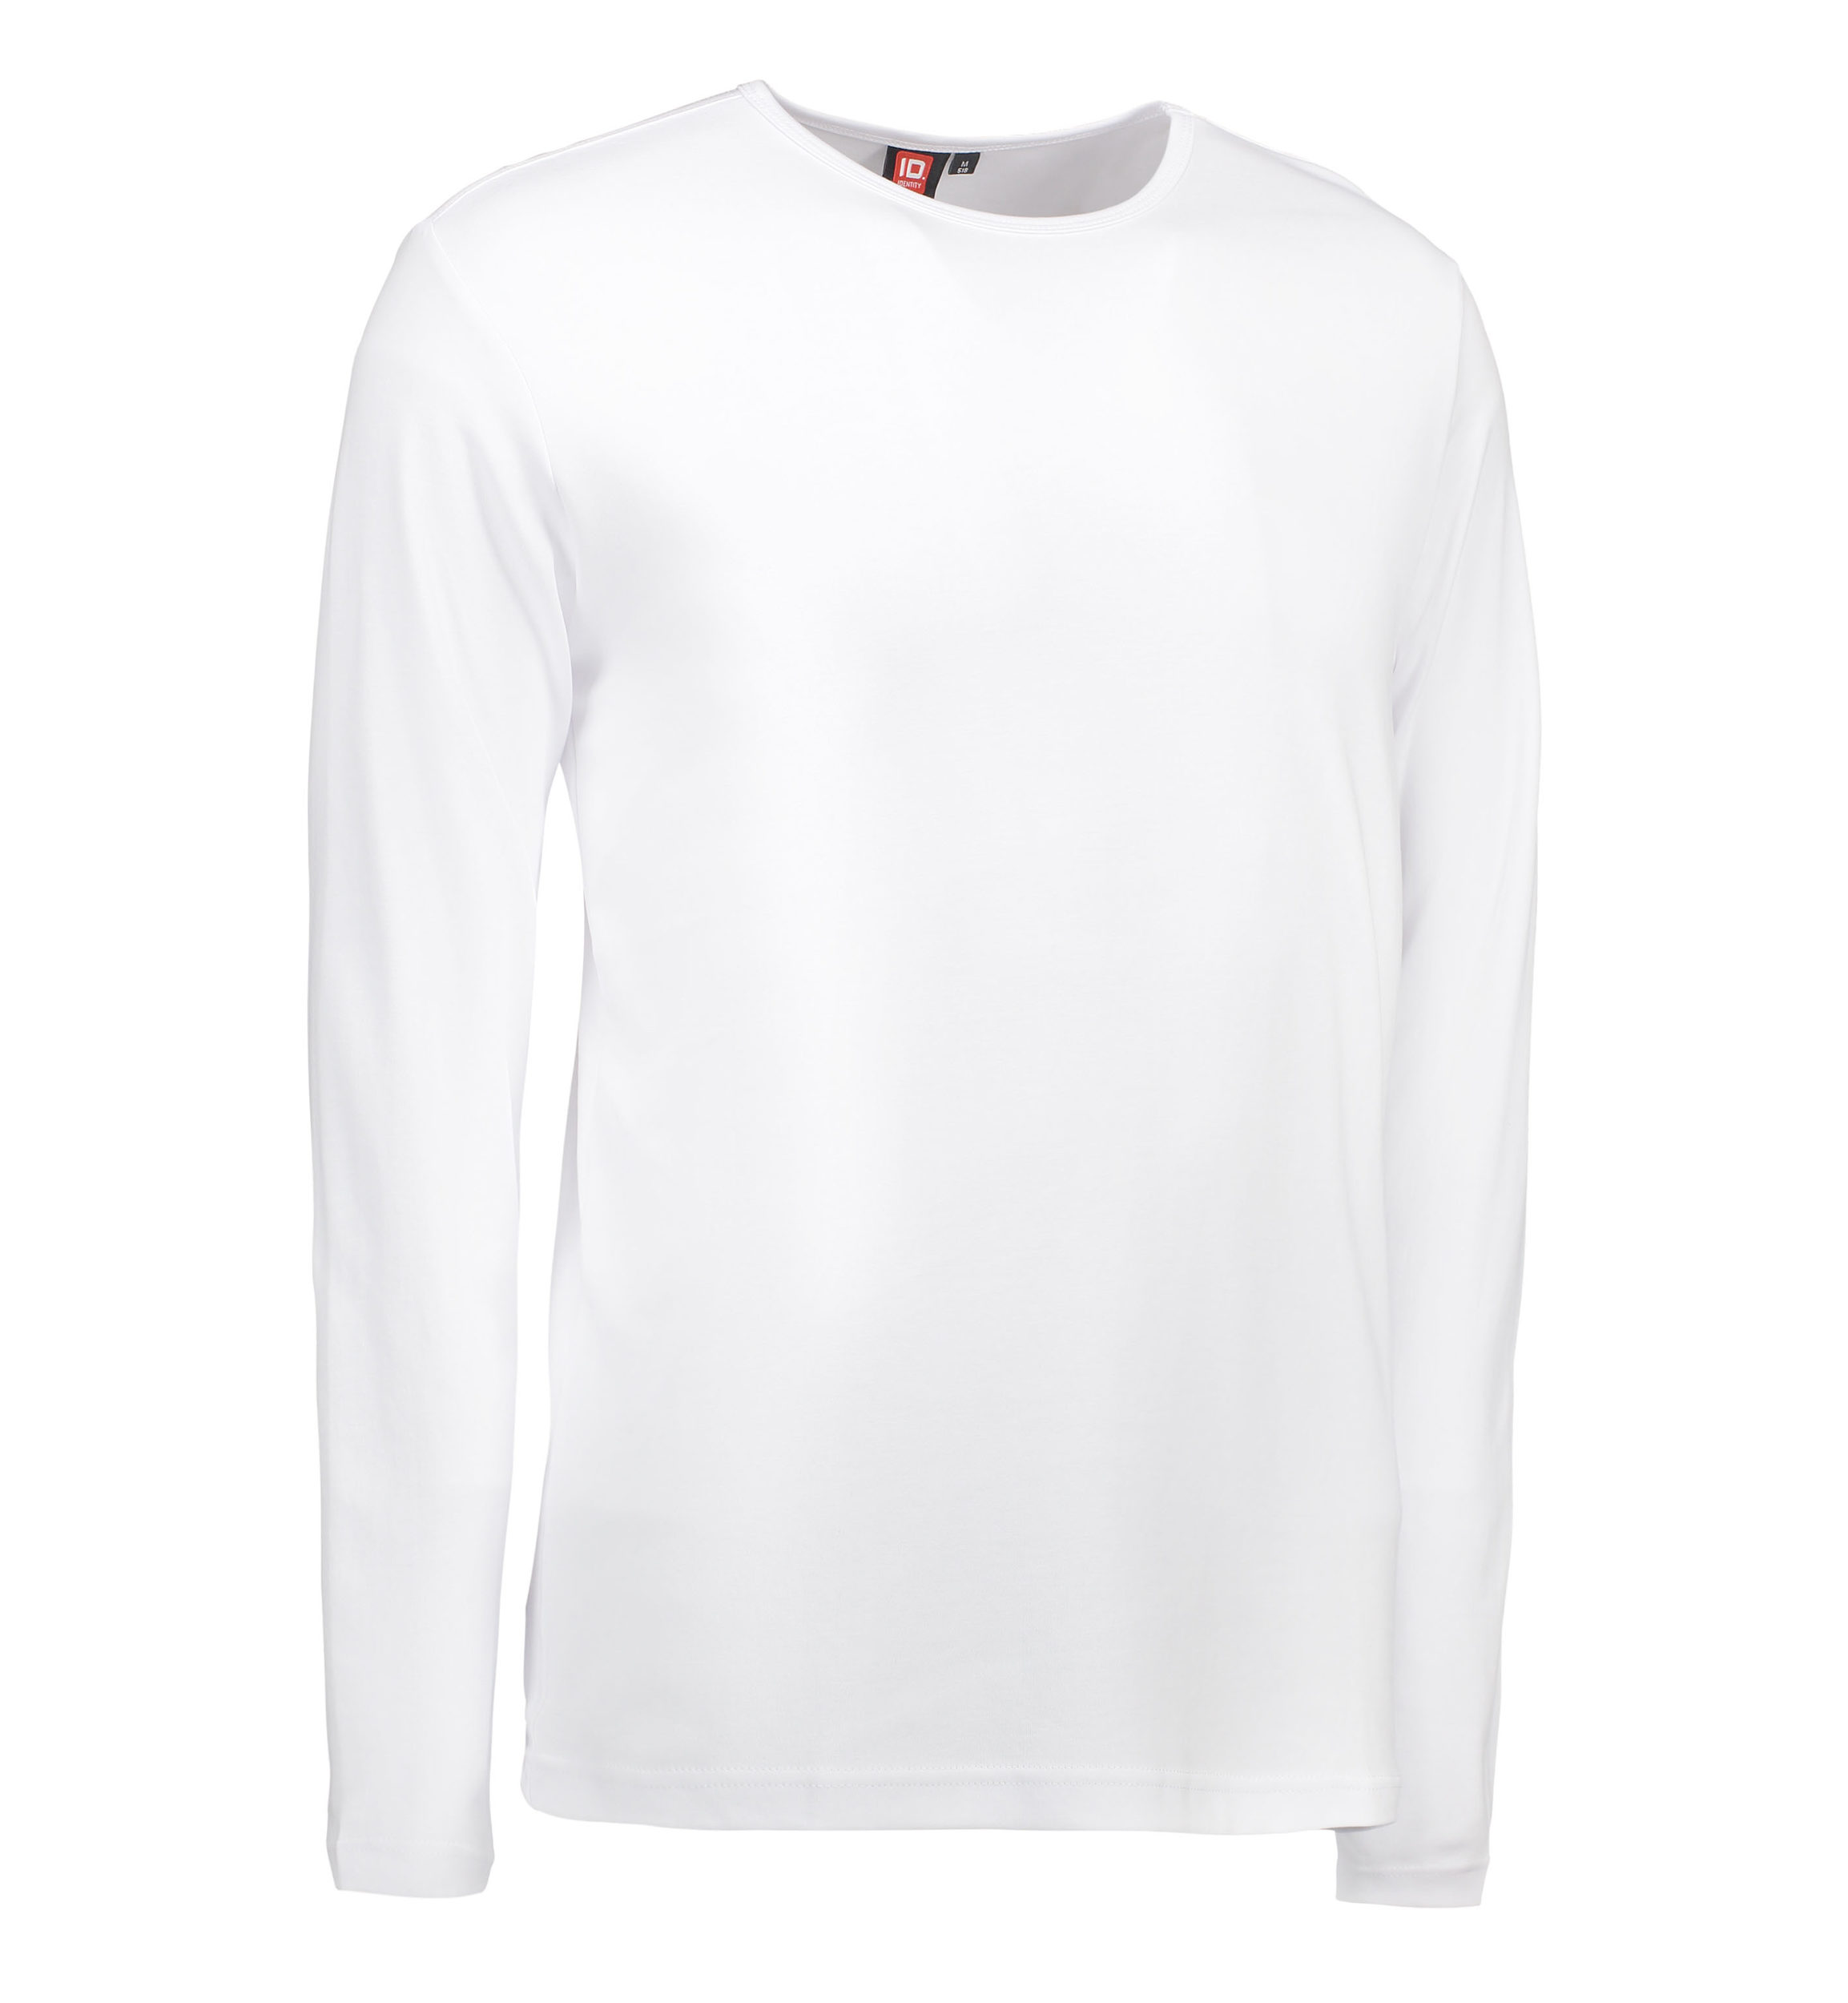 Billede af Hvid langærmet t-shirt til mænd - S hos Sygeplejebutikken.dk